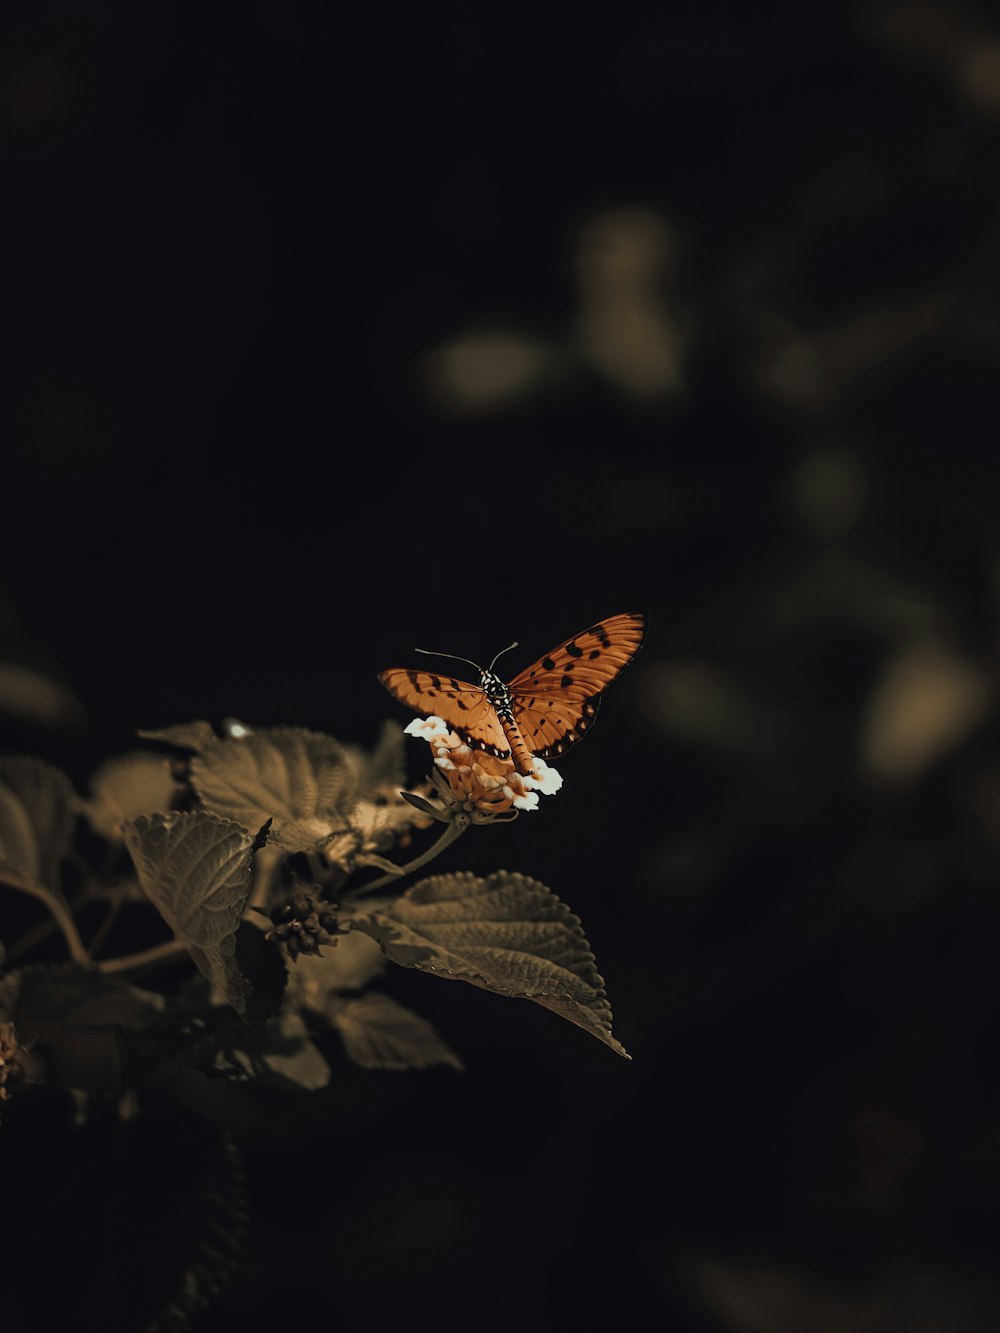 borboleta marrom e branca empoleirada na folha marrom em fotografia de perto